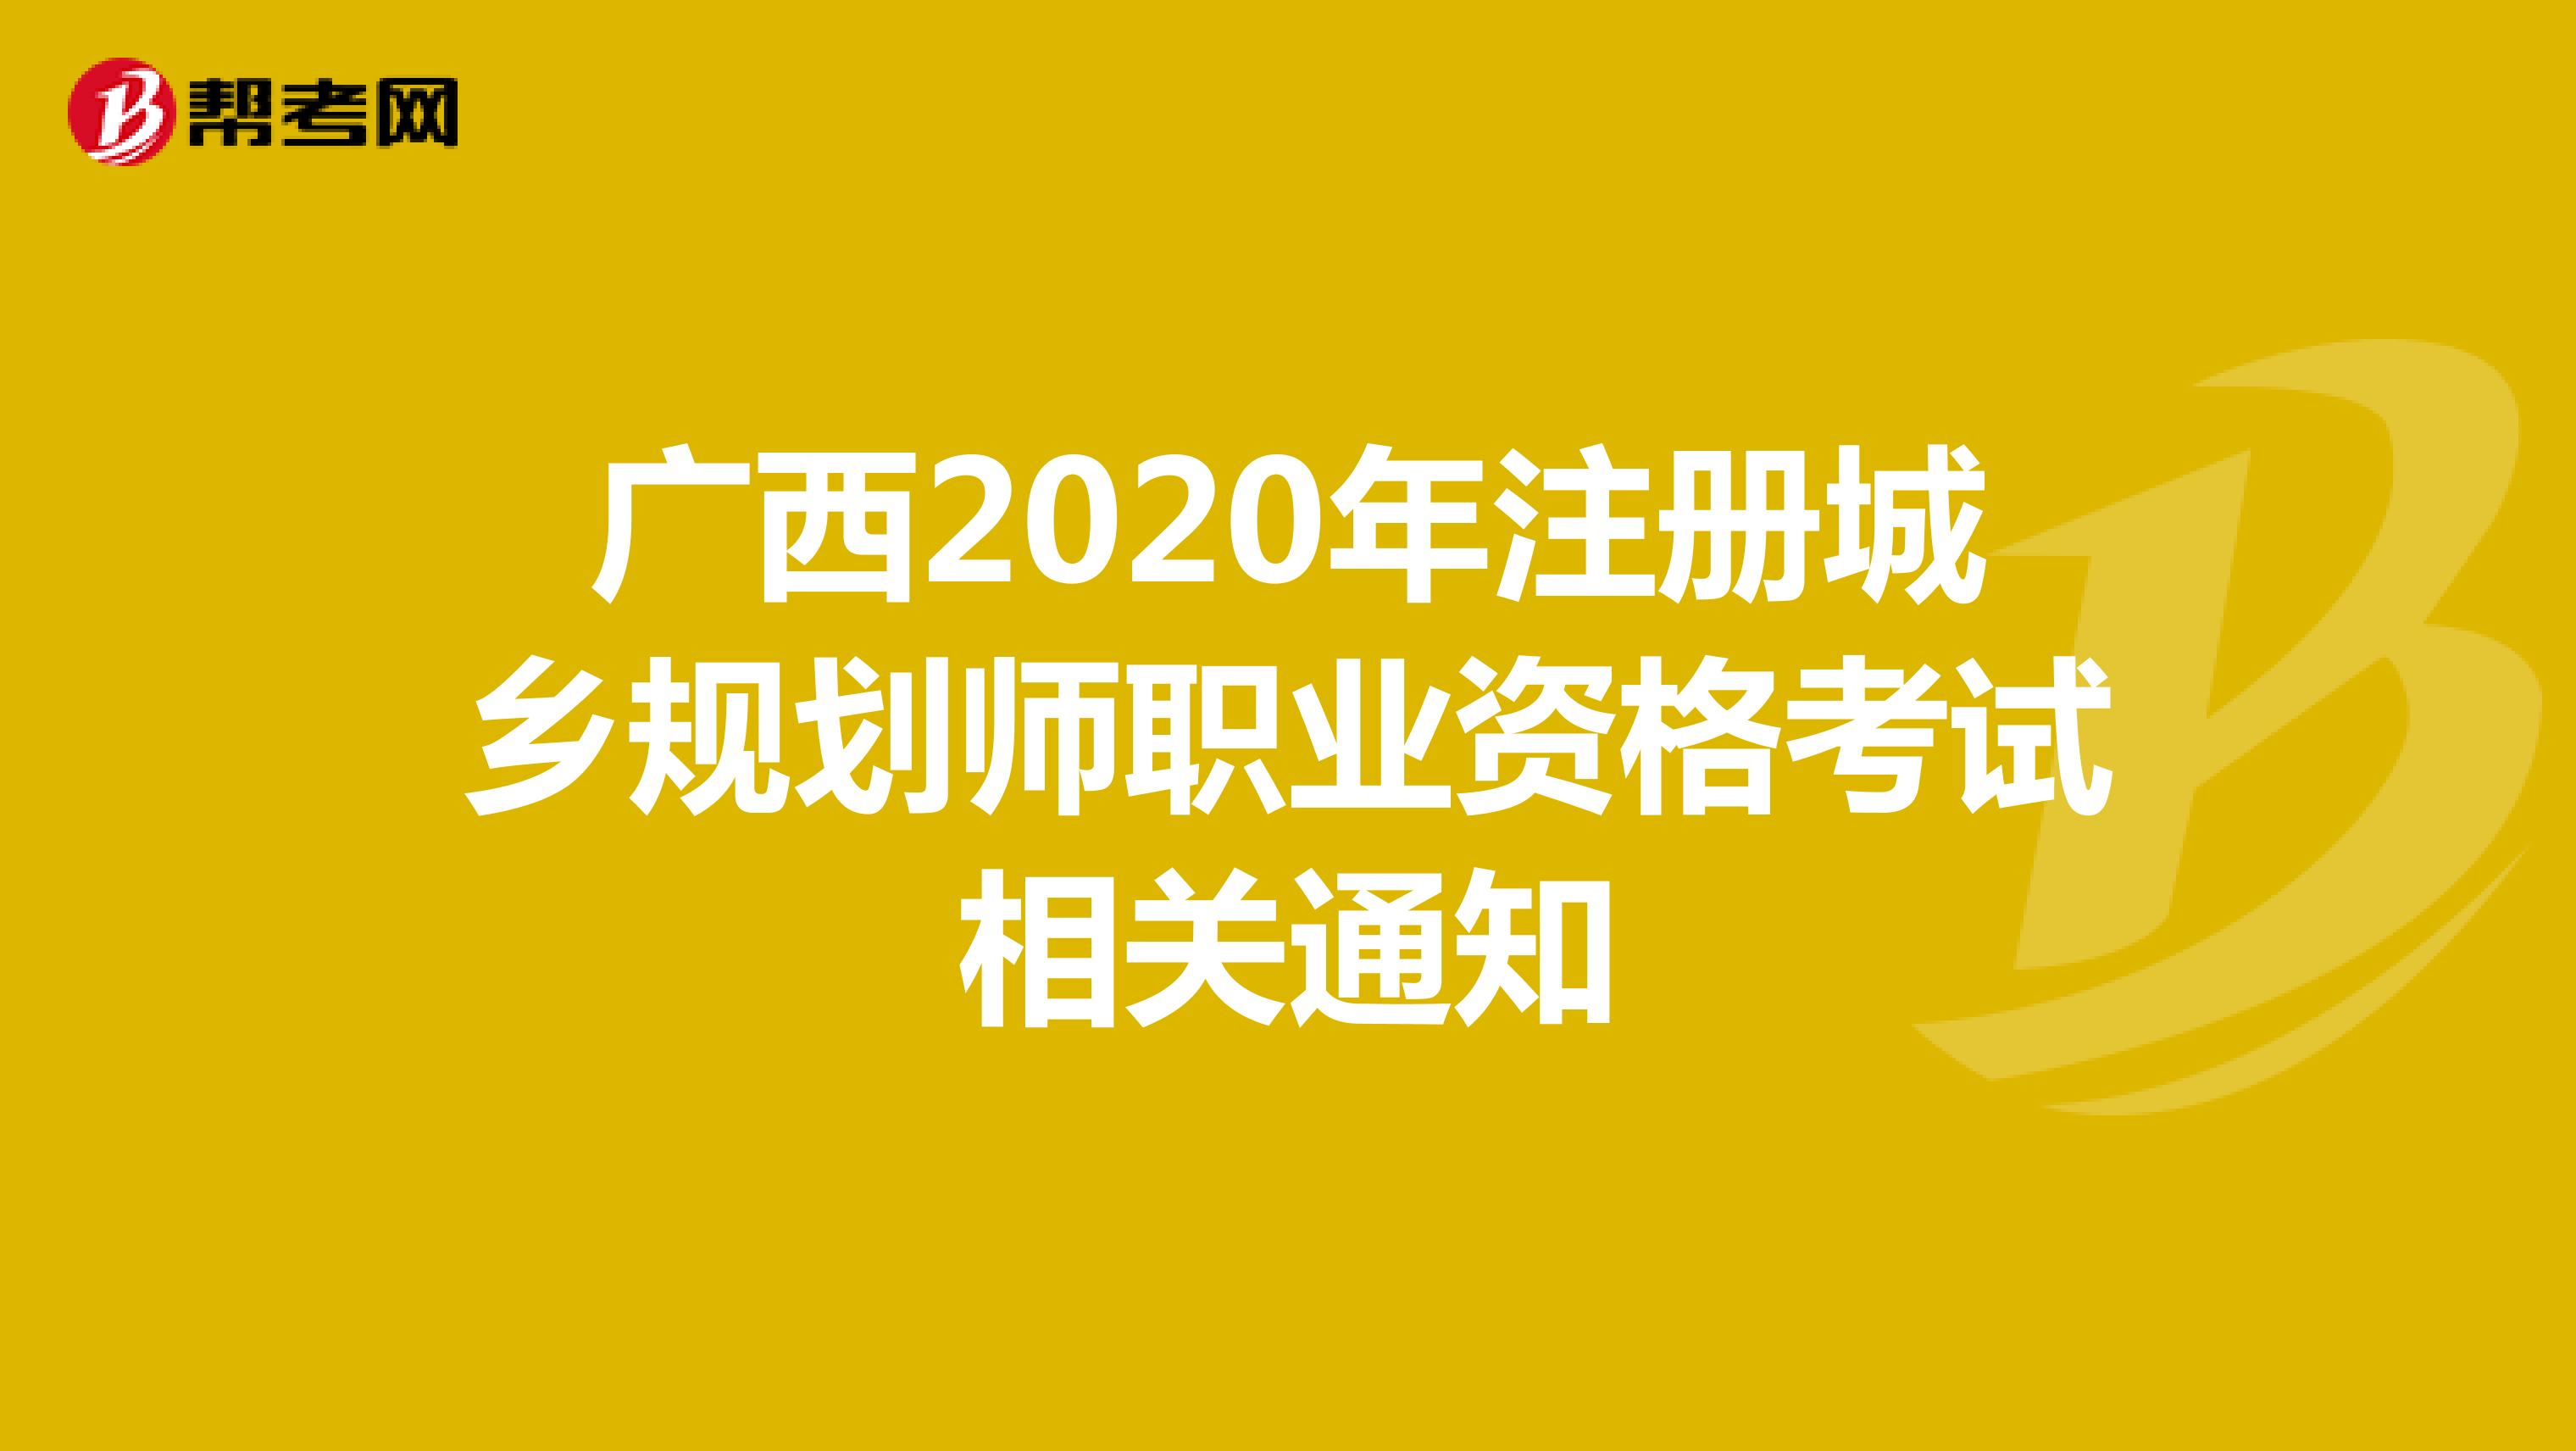 广西2020年注册城乡规划师职业资格考试相关通知